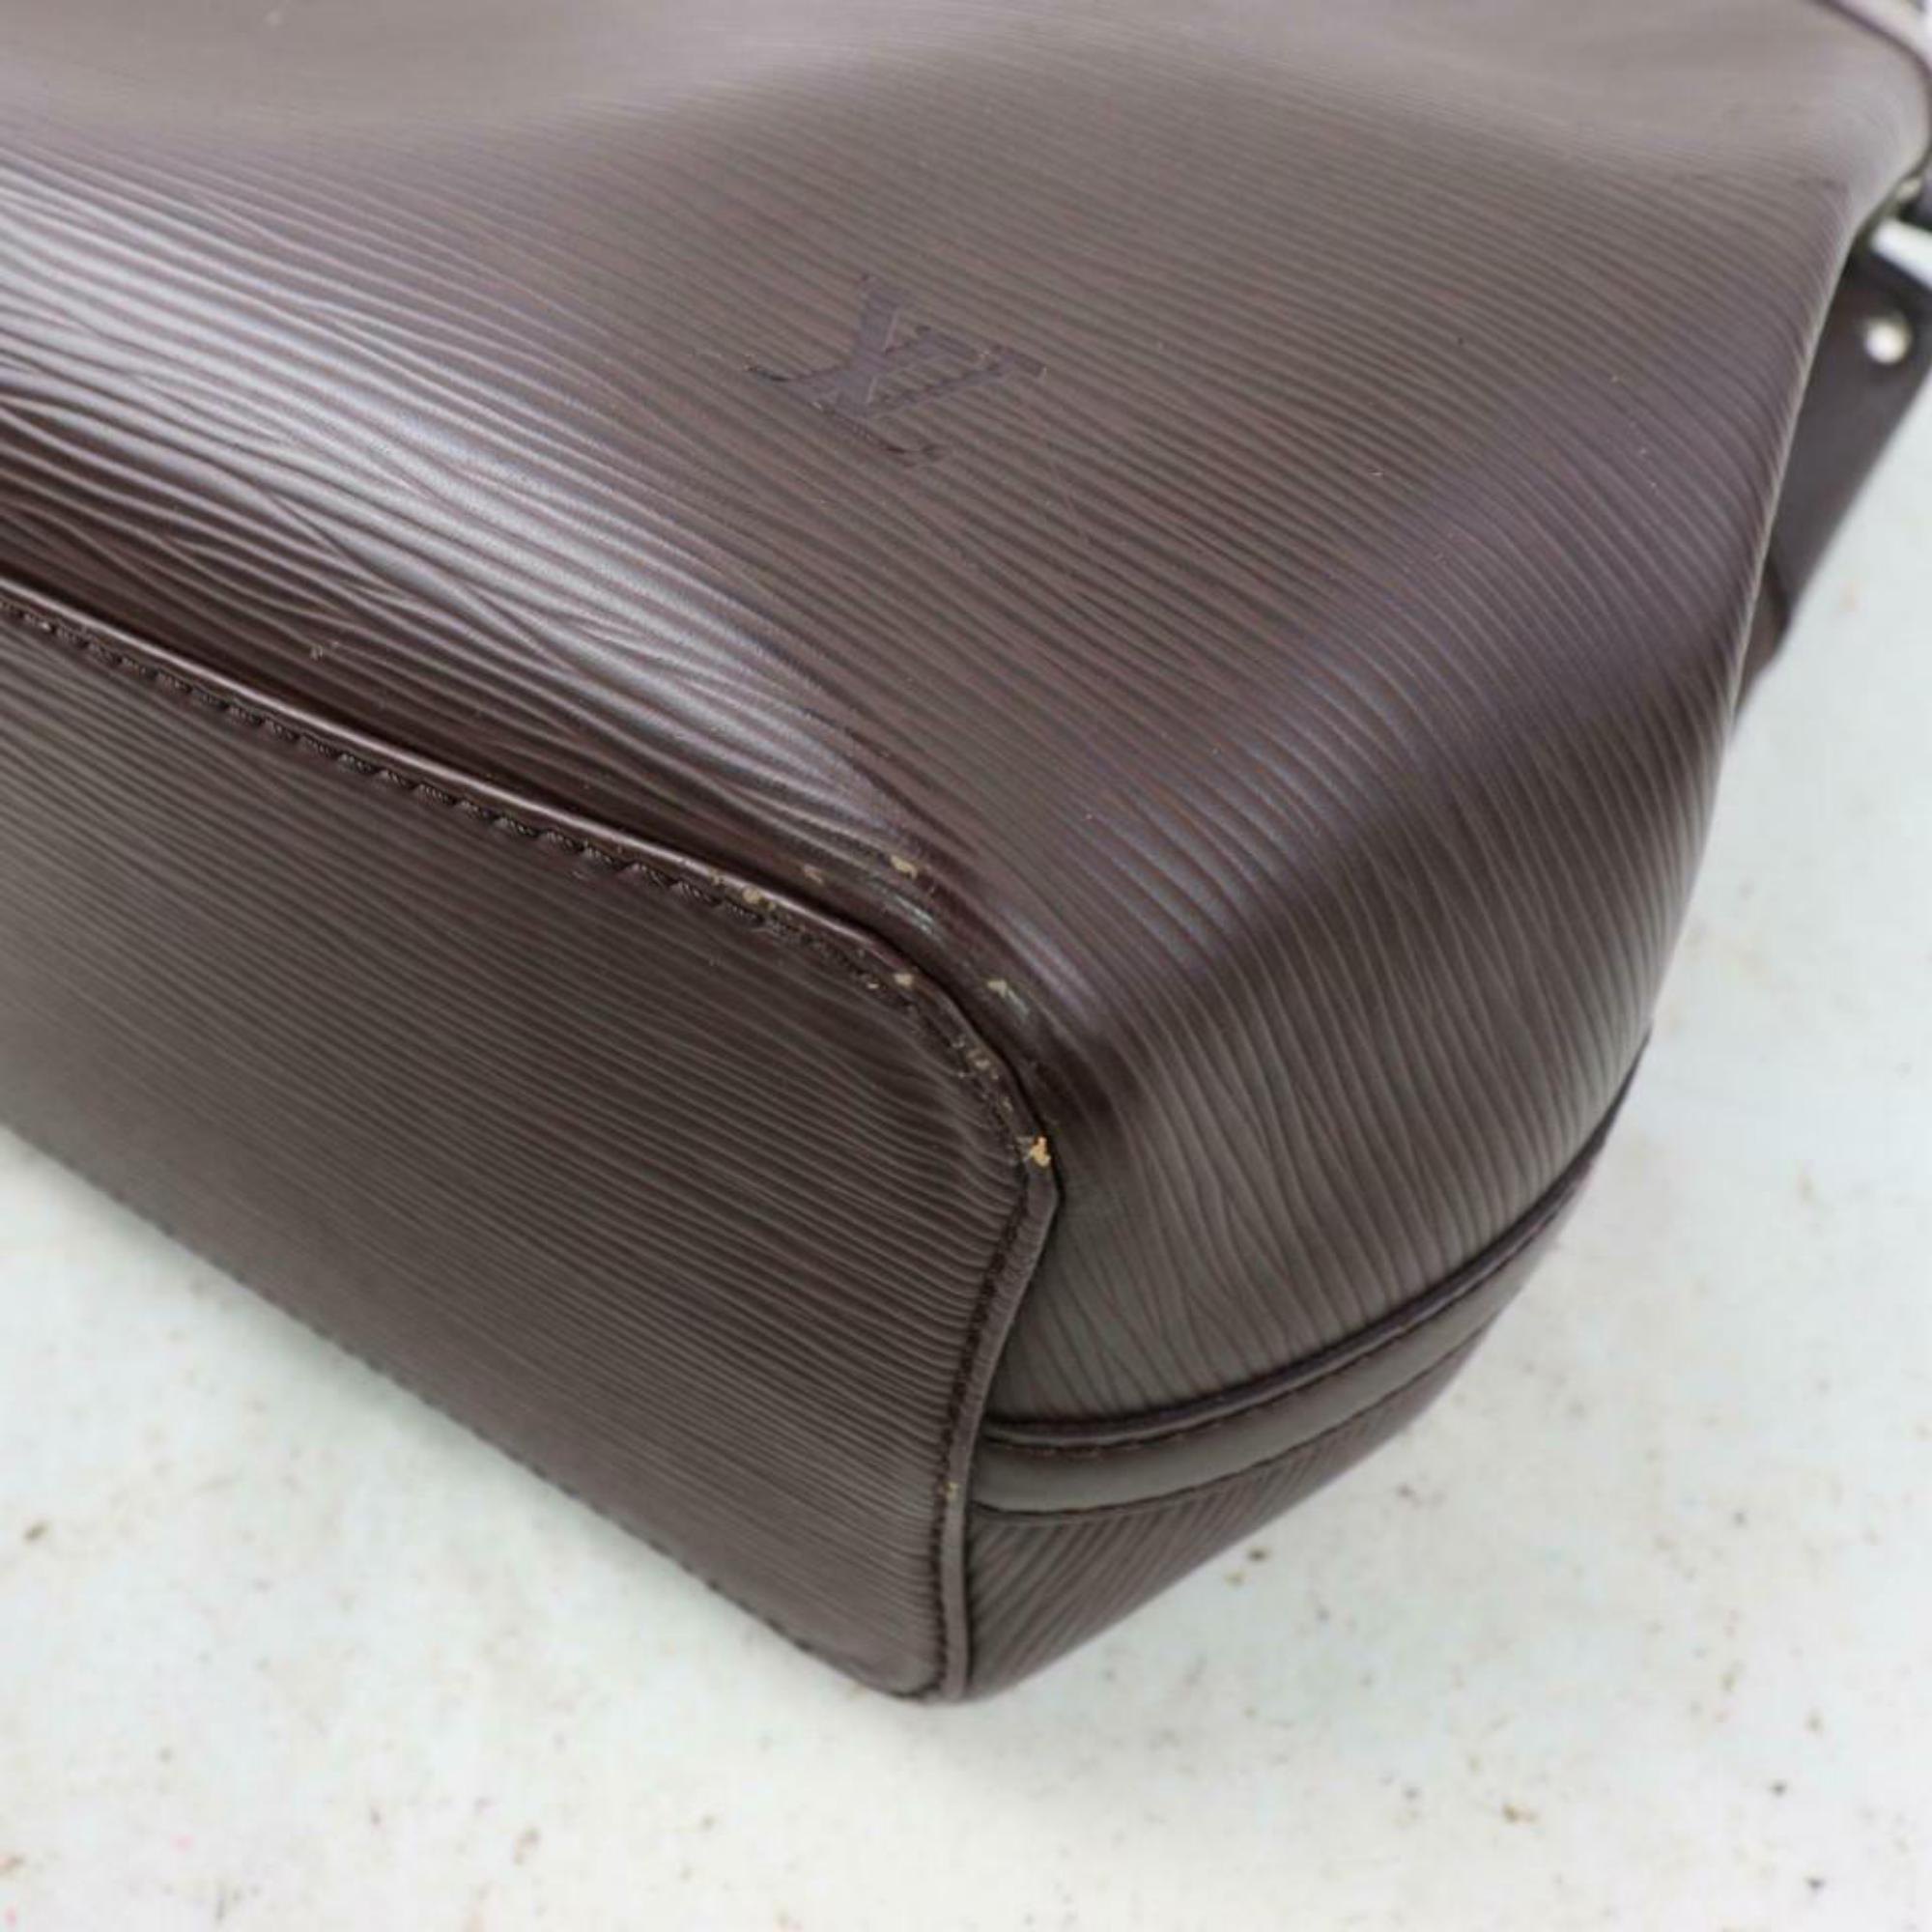 Louis Vuitton Mandara Moka Mm 870580 Brown Epi Leather Shoulder Bag For Sale 5